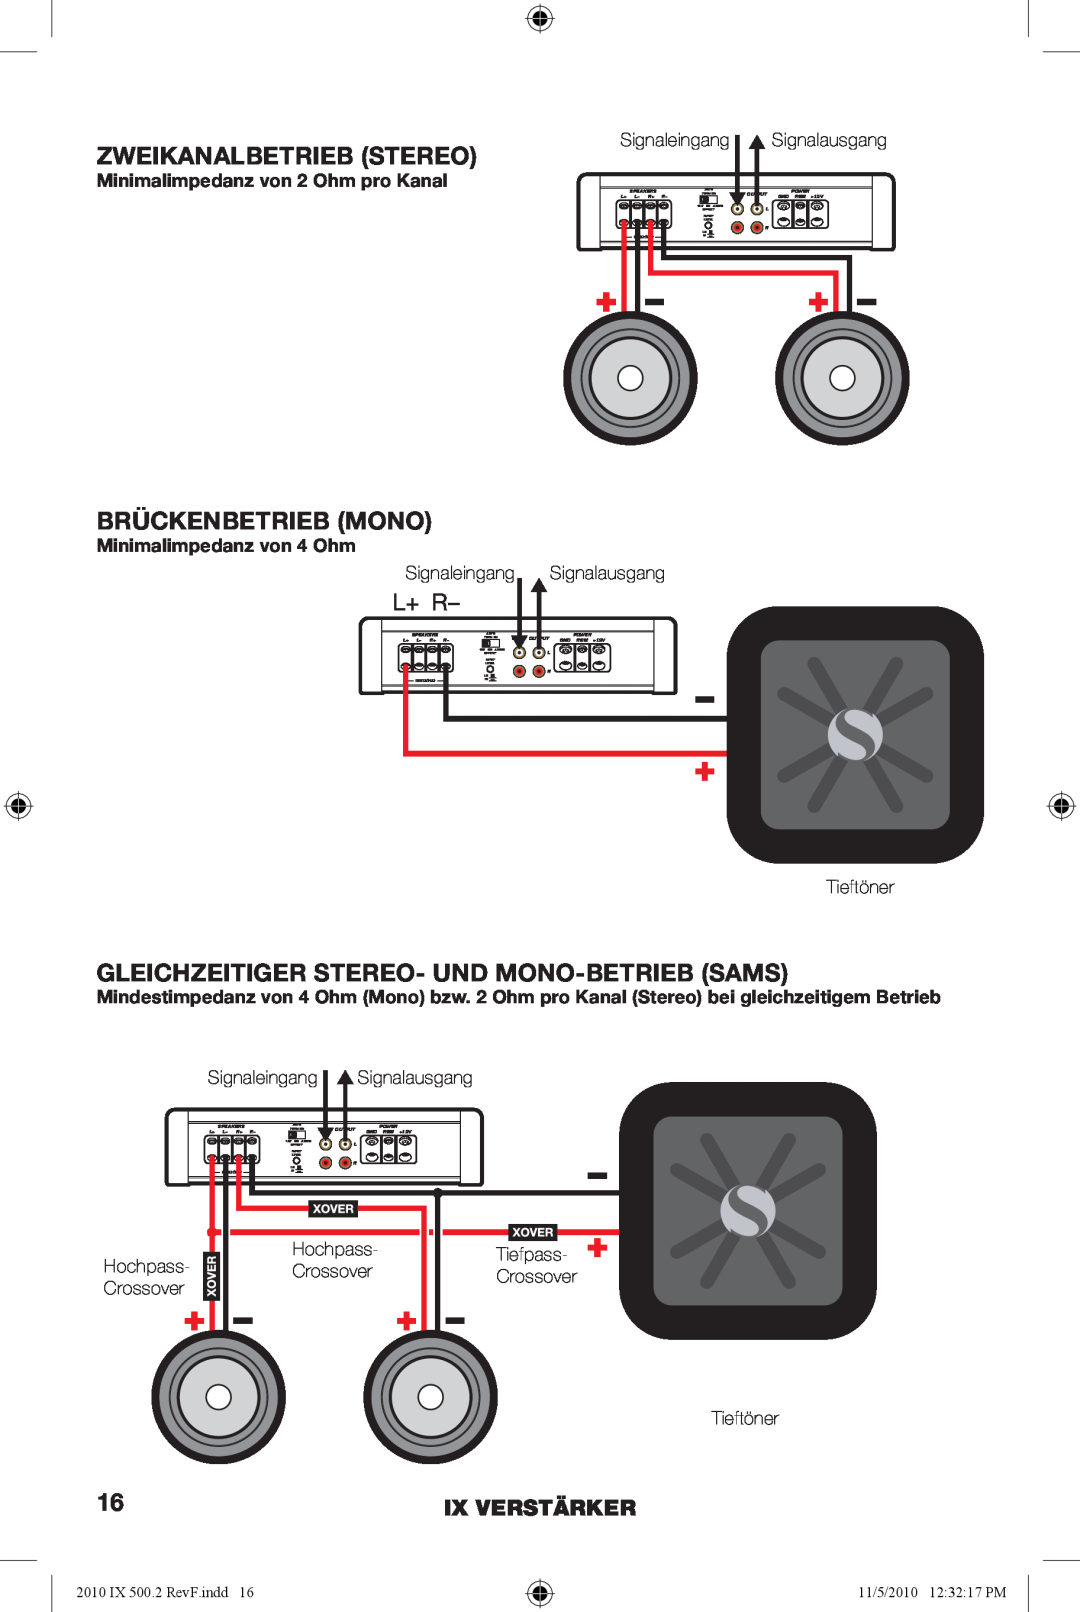 Kicker IX500.2 manual Zweikanalbetrieb Stereo, Brückenbetrieb Mono, Gleichzeitiger Stereo- Und Mono-Betriebsams, L+ R 